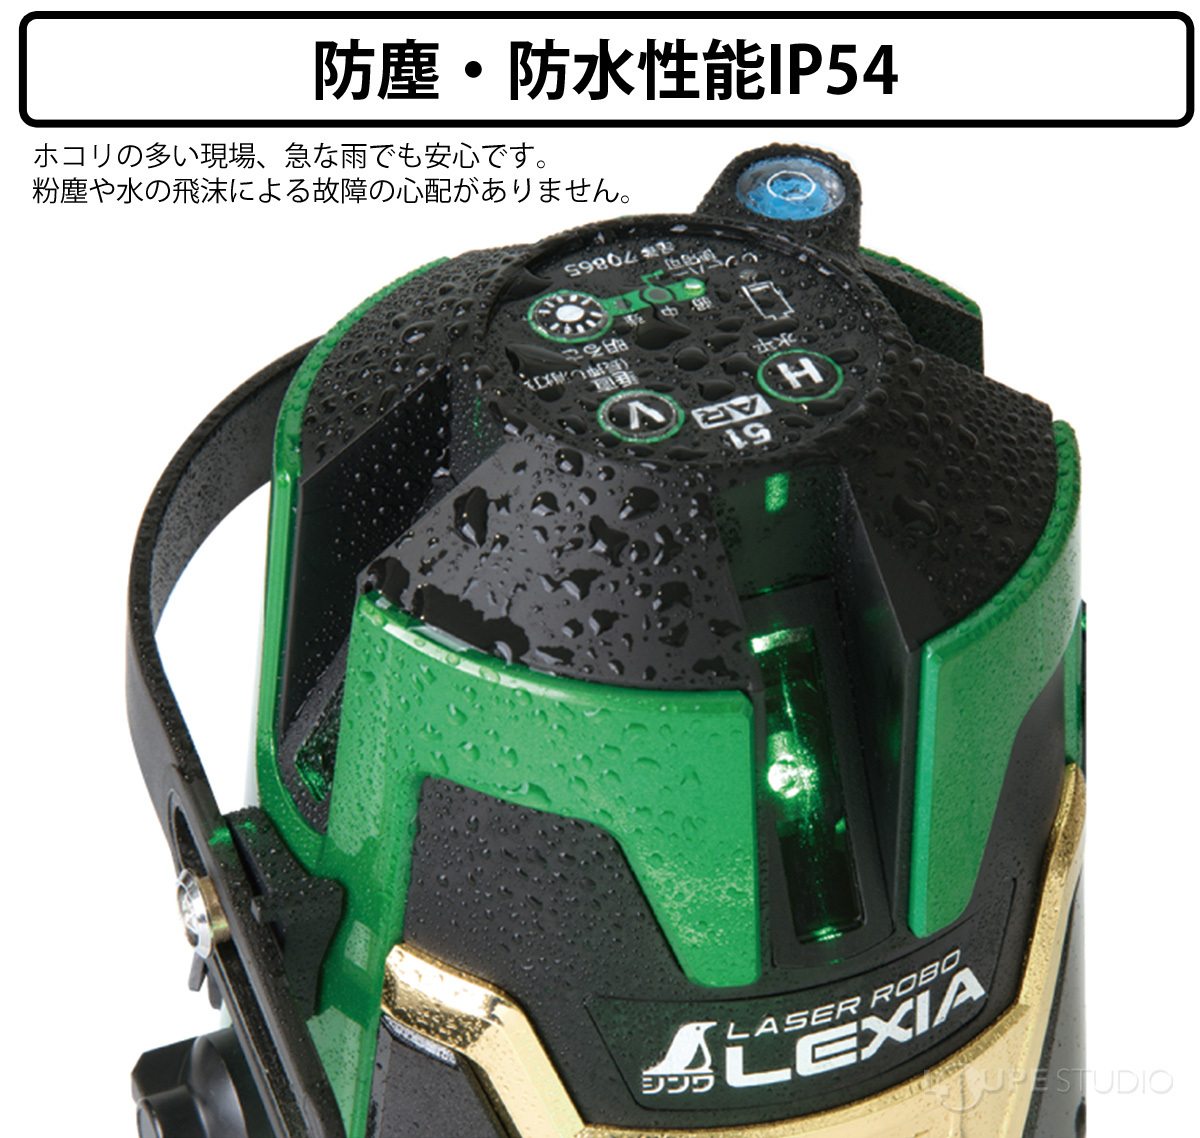 レーザー墨出し器 レーザーロボ LEXIA 01AR グリーン 受光器・三脚